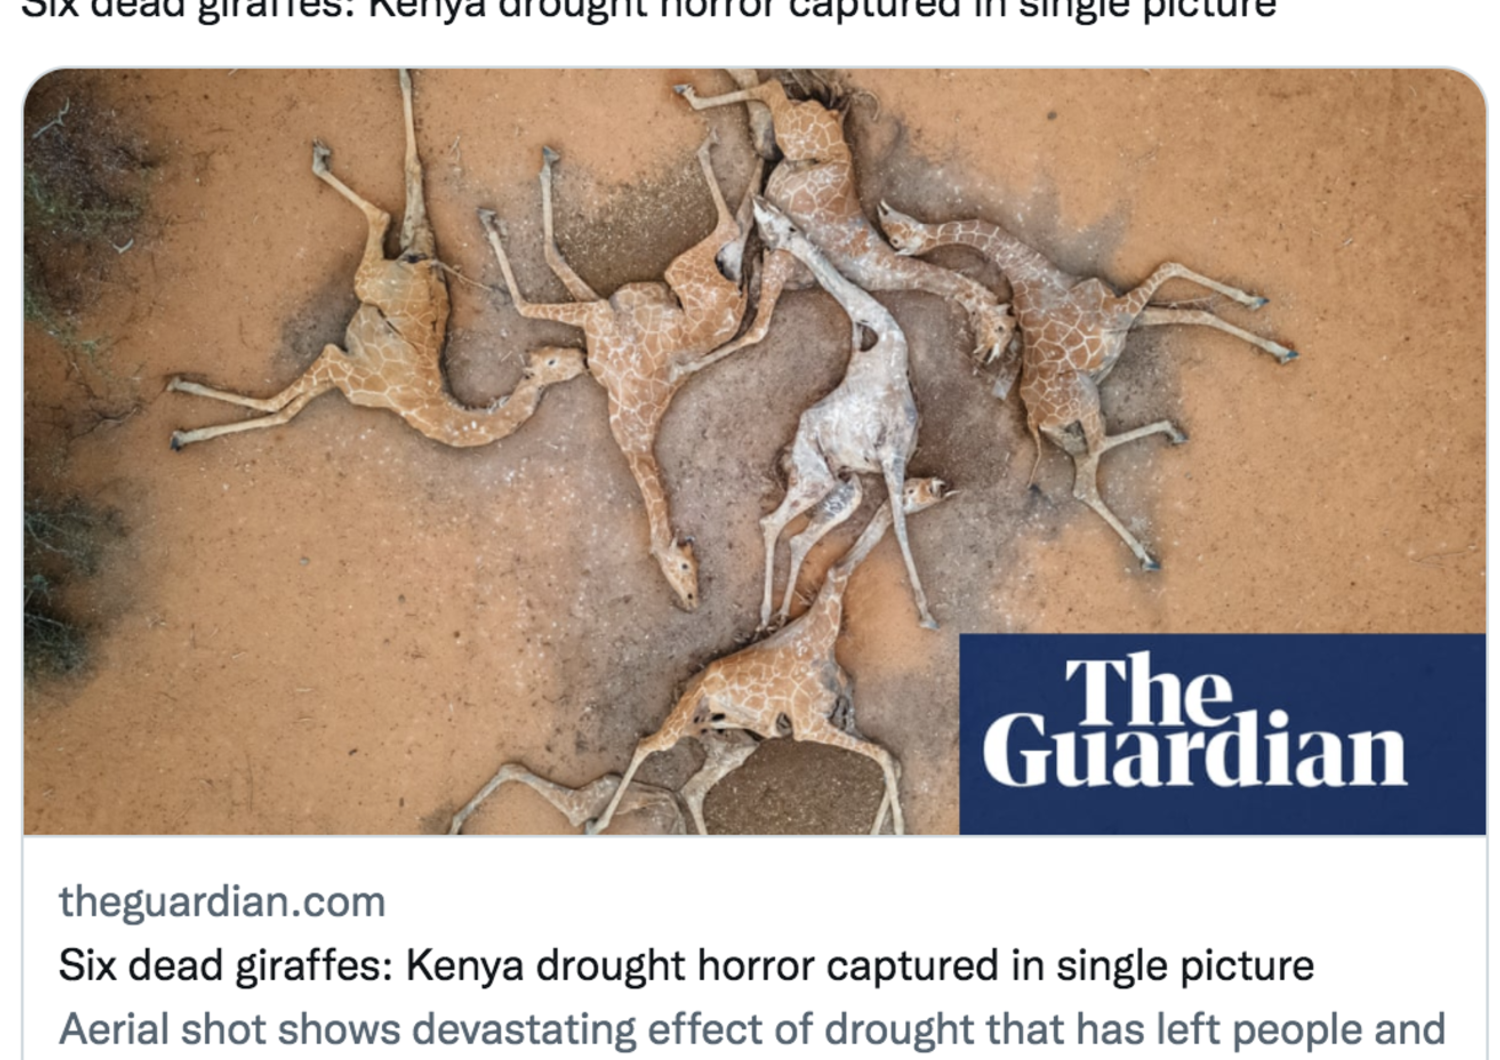 drammatica foto giraffe morte di sete in kenya